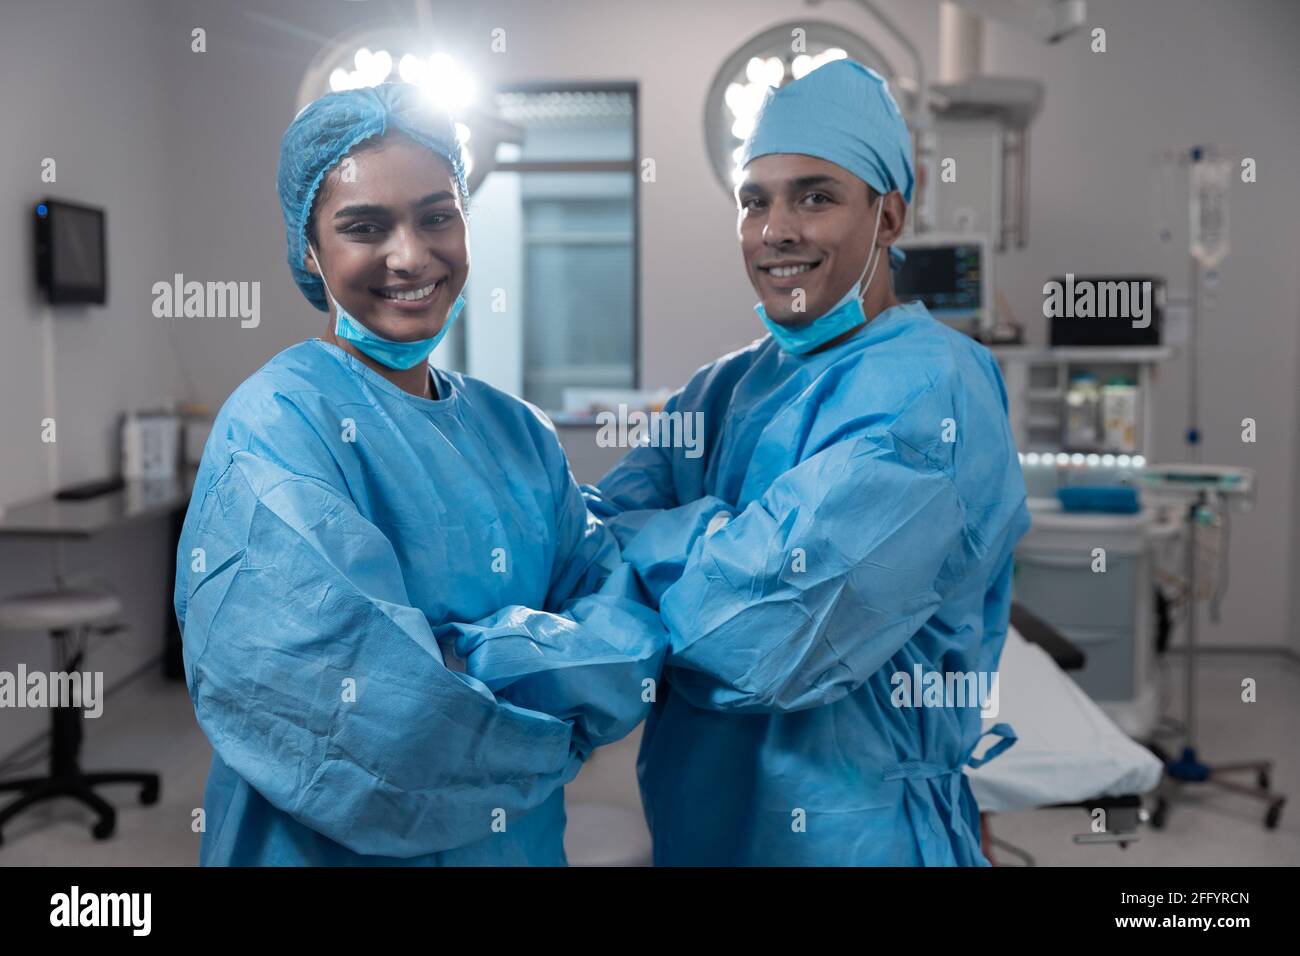 Lächelnd verschiedene männliche Chirurgen mit Gesichtsmasken und Schutz Kleidung im Operationssaal Stockfoto